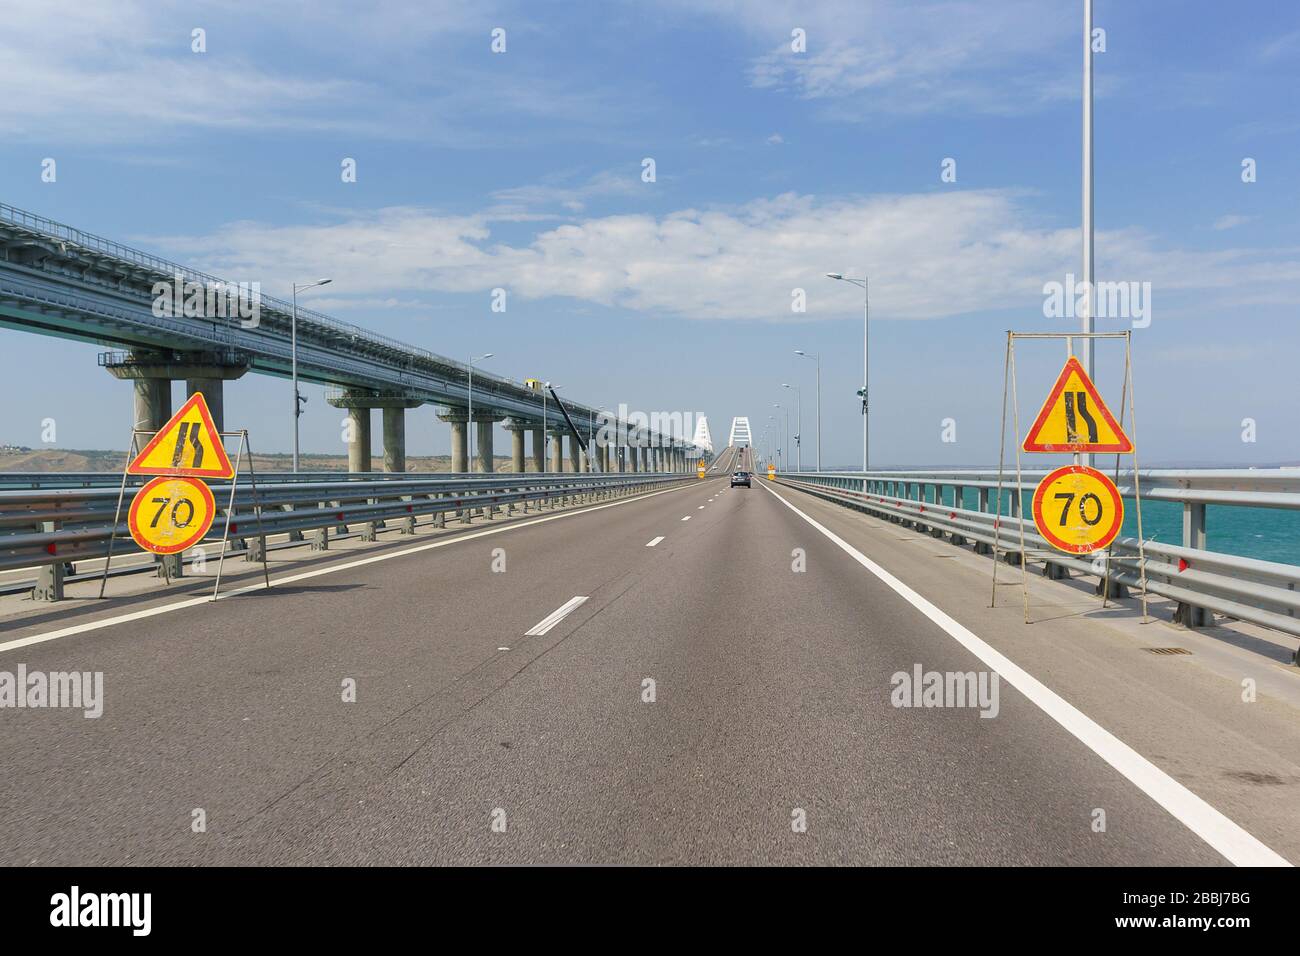 Panneaux de limitation de vitesse jaune de la voiture et rétrécissement de la route en raison de réparations. Pont de Crimée traversant le détroit de Kerch Banque D'Images